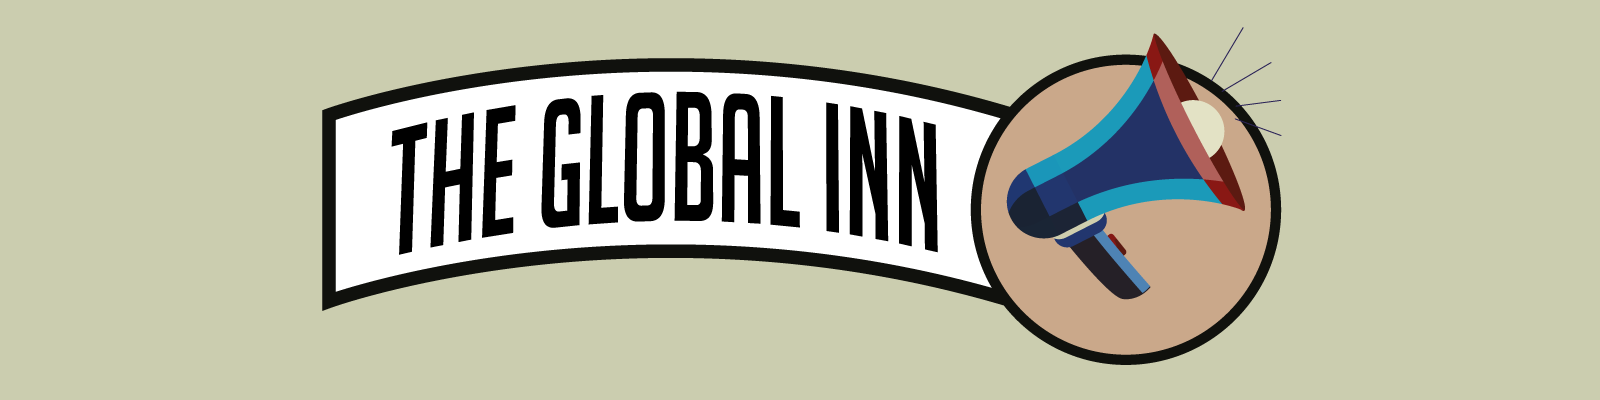 The Global Inn